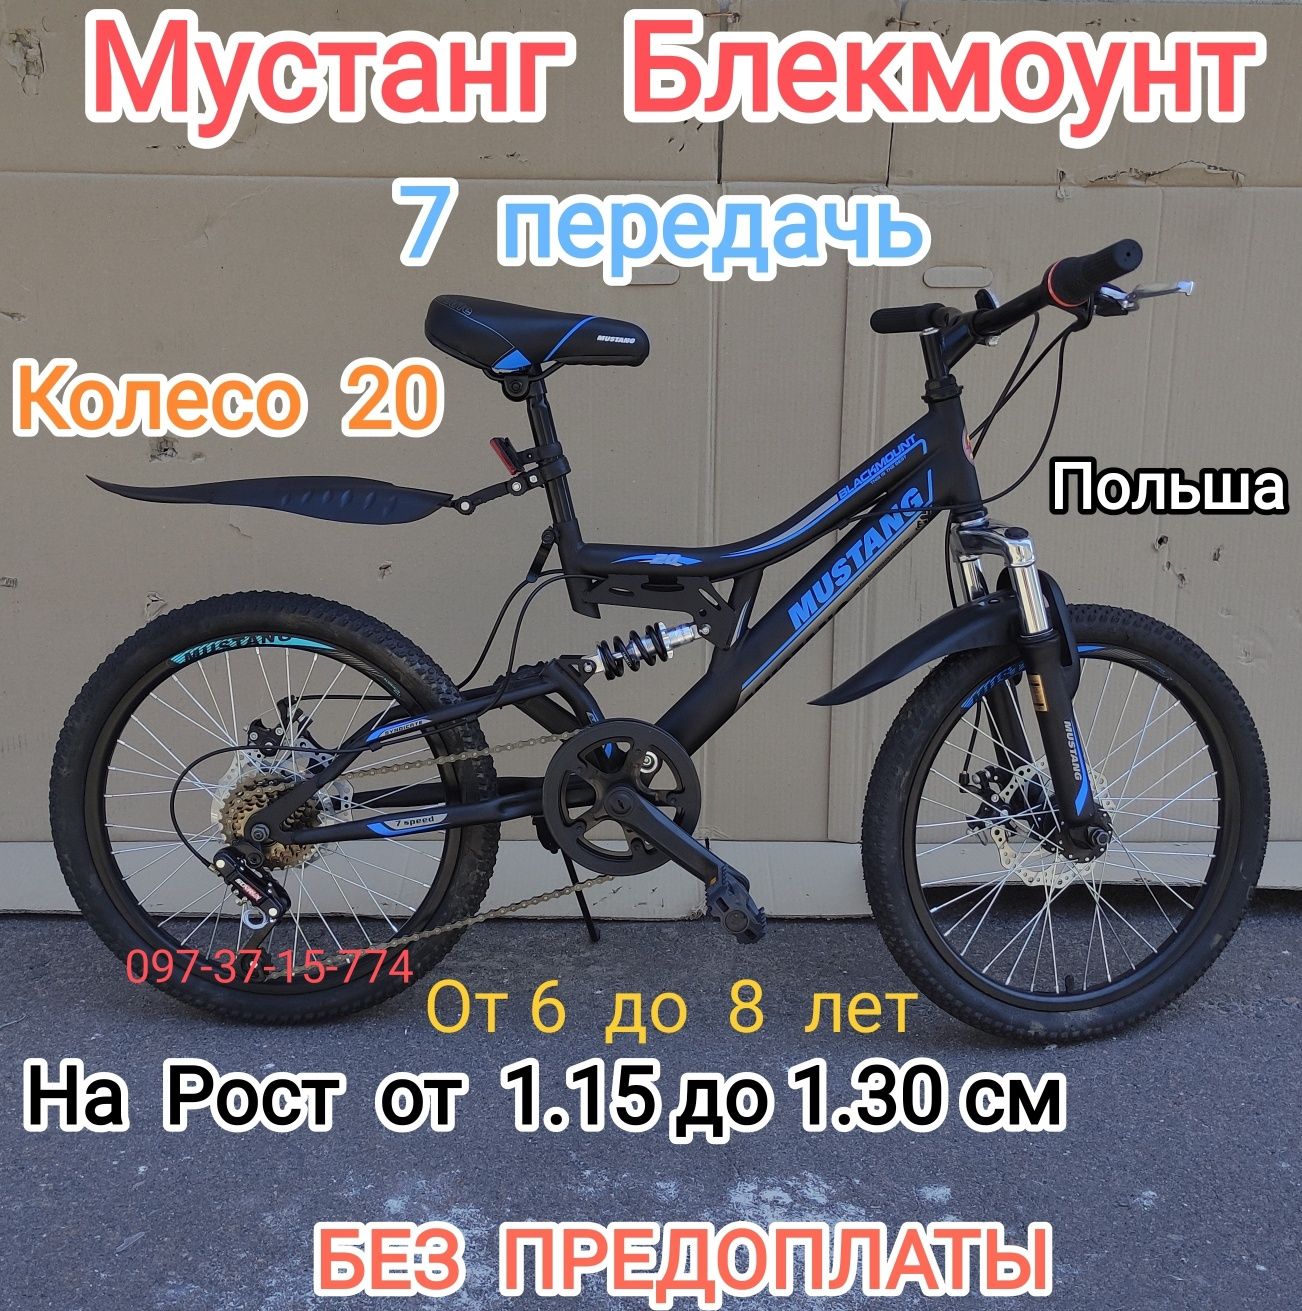 Детский Горный Двухподвесный Велосипед Mustang Blackmount 20 ЧЕРН-КРАС